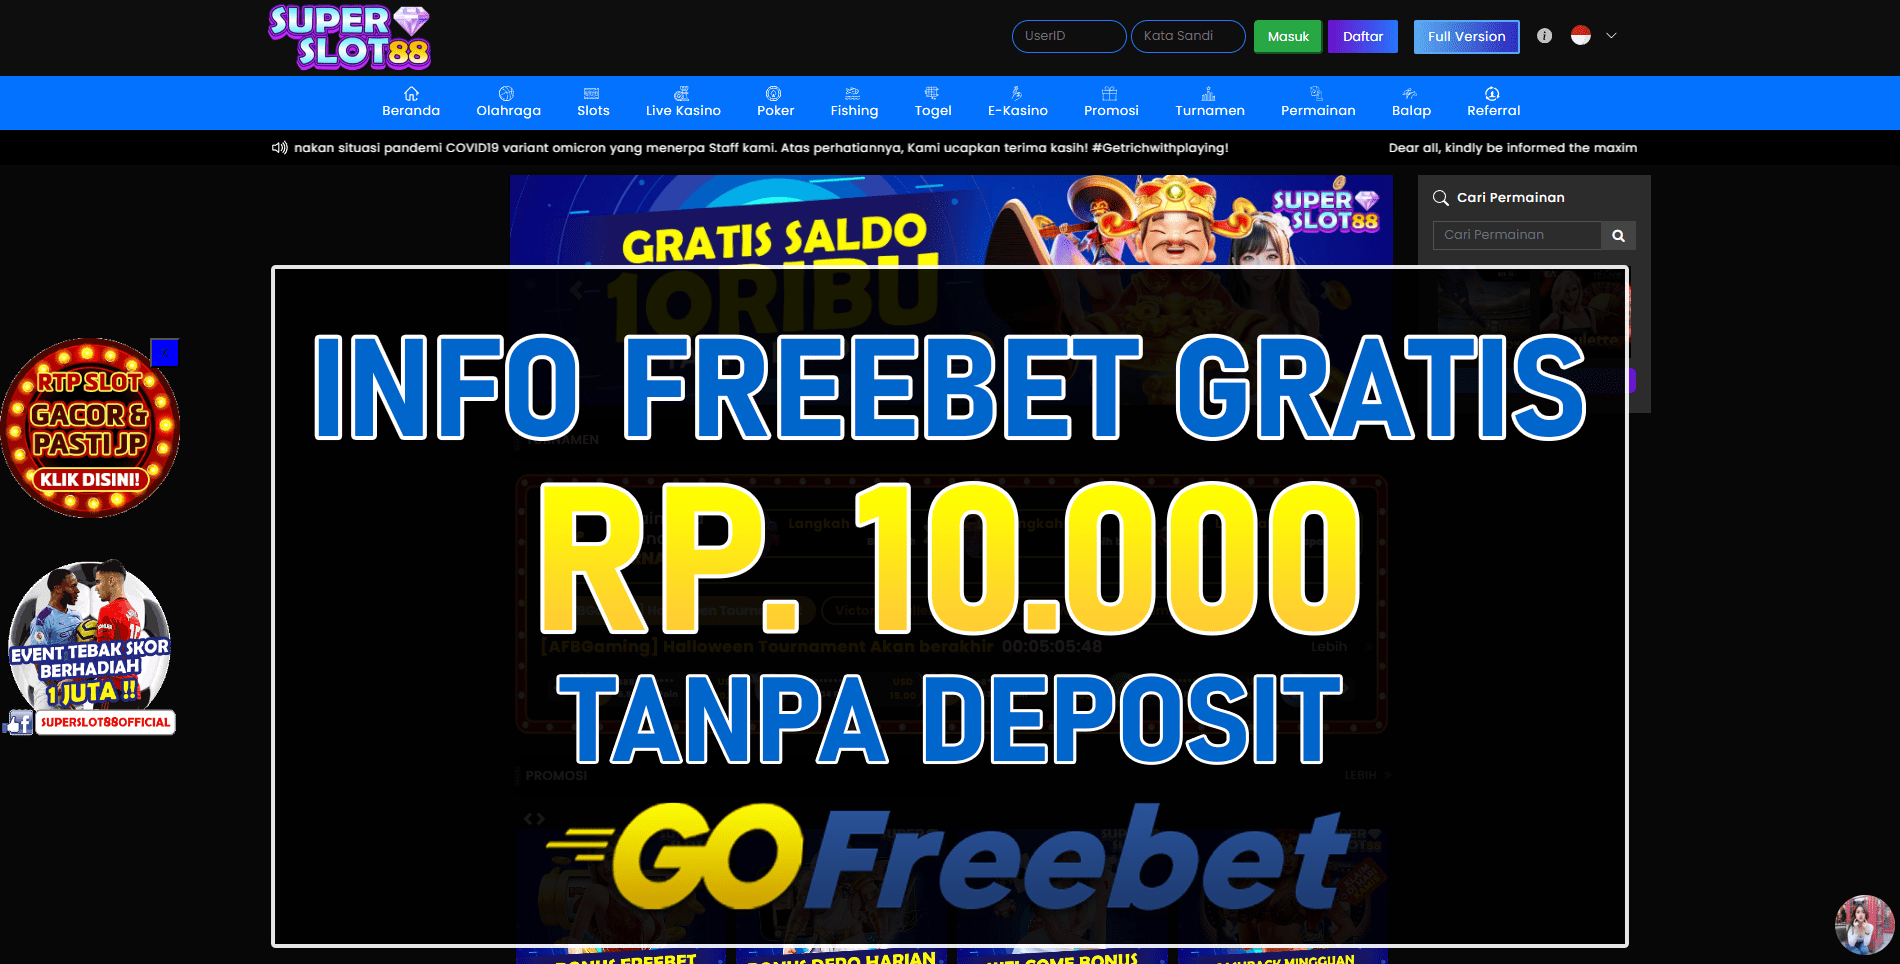 Superslot88 Freebet Gratis Rp 10.000 Tanpa Deposit